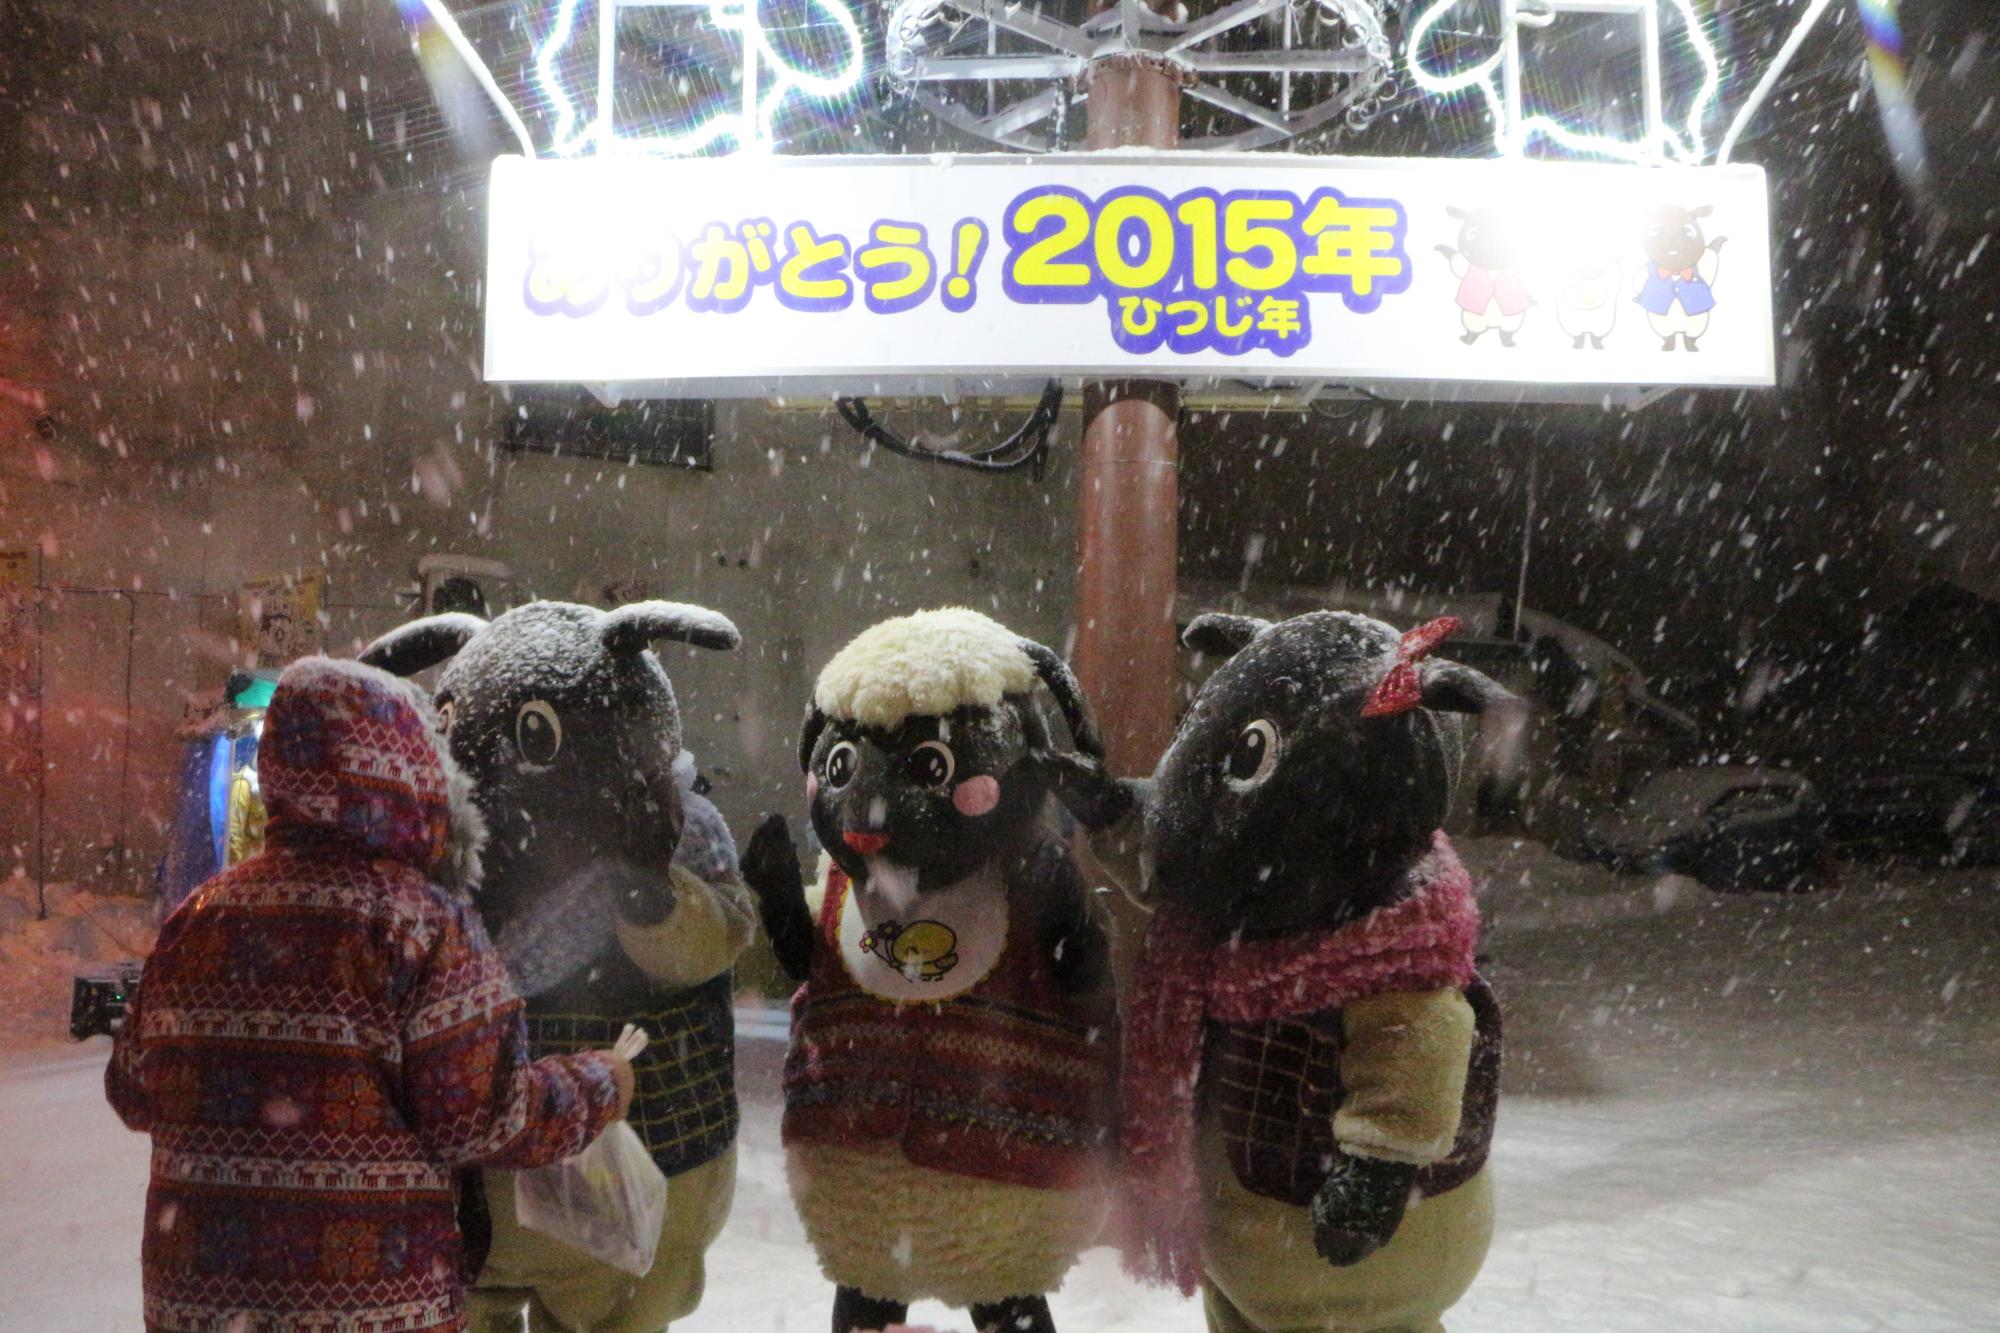 雪が降るなか、「ありがとう！2015年ひつじ年」と書かれた看板の下に立っている3体のマスコットキャラクターとフードを被った人が向かい合っている写真